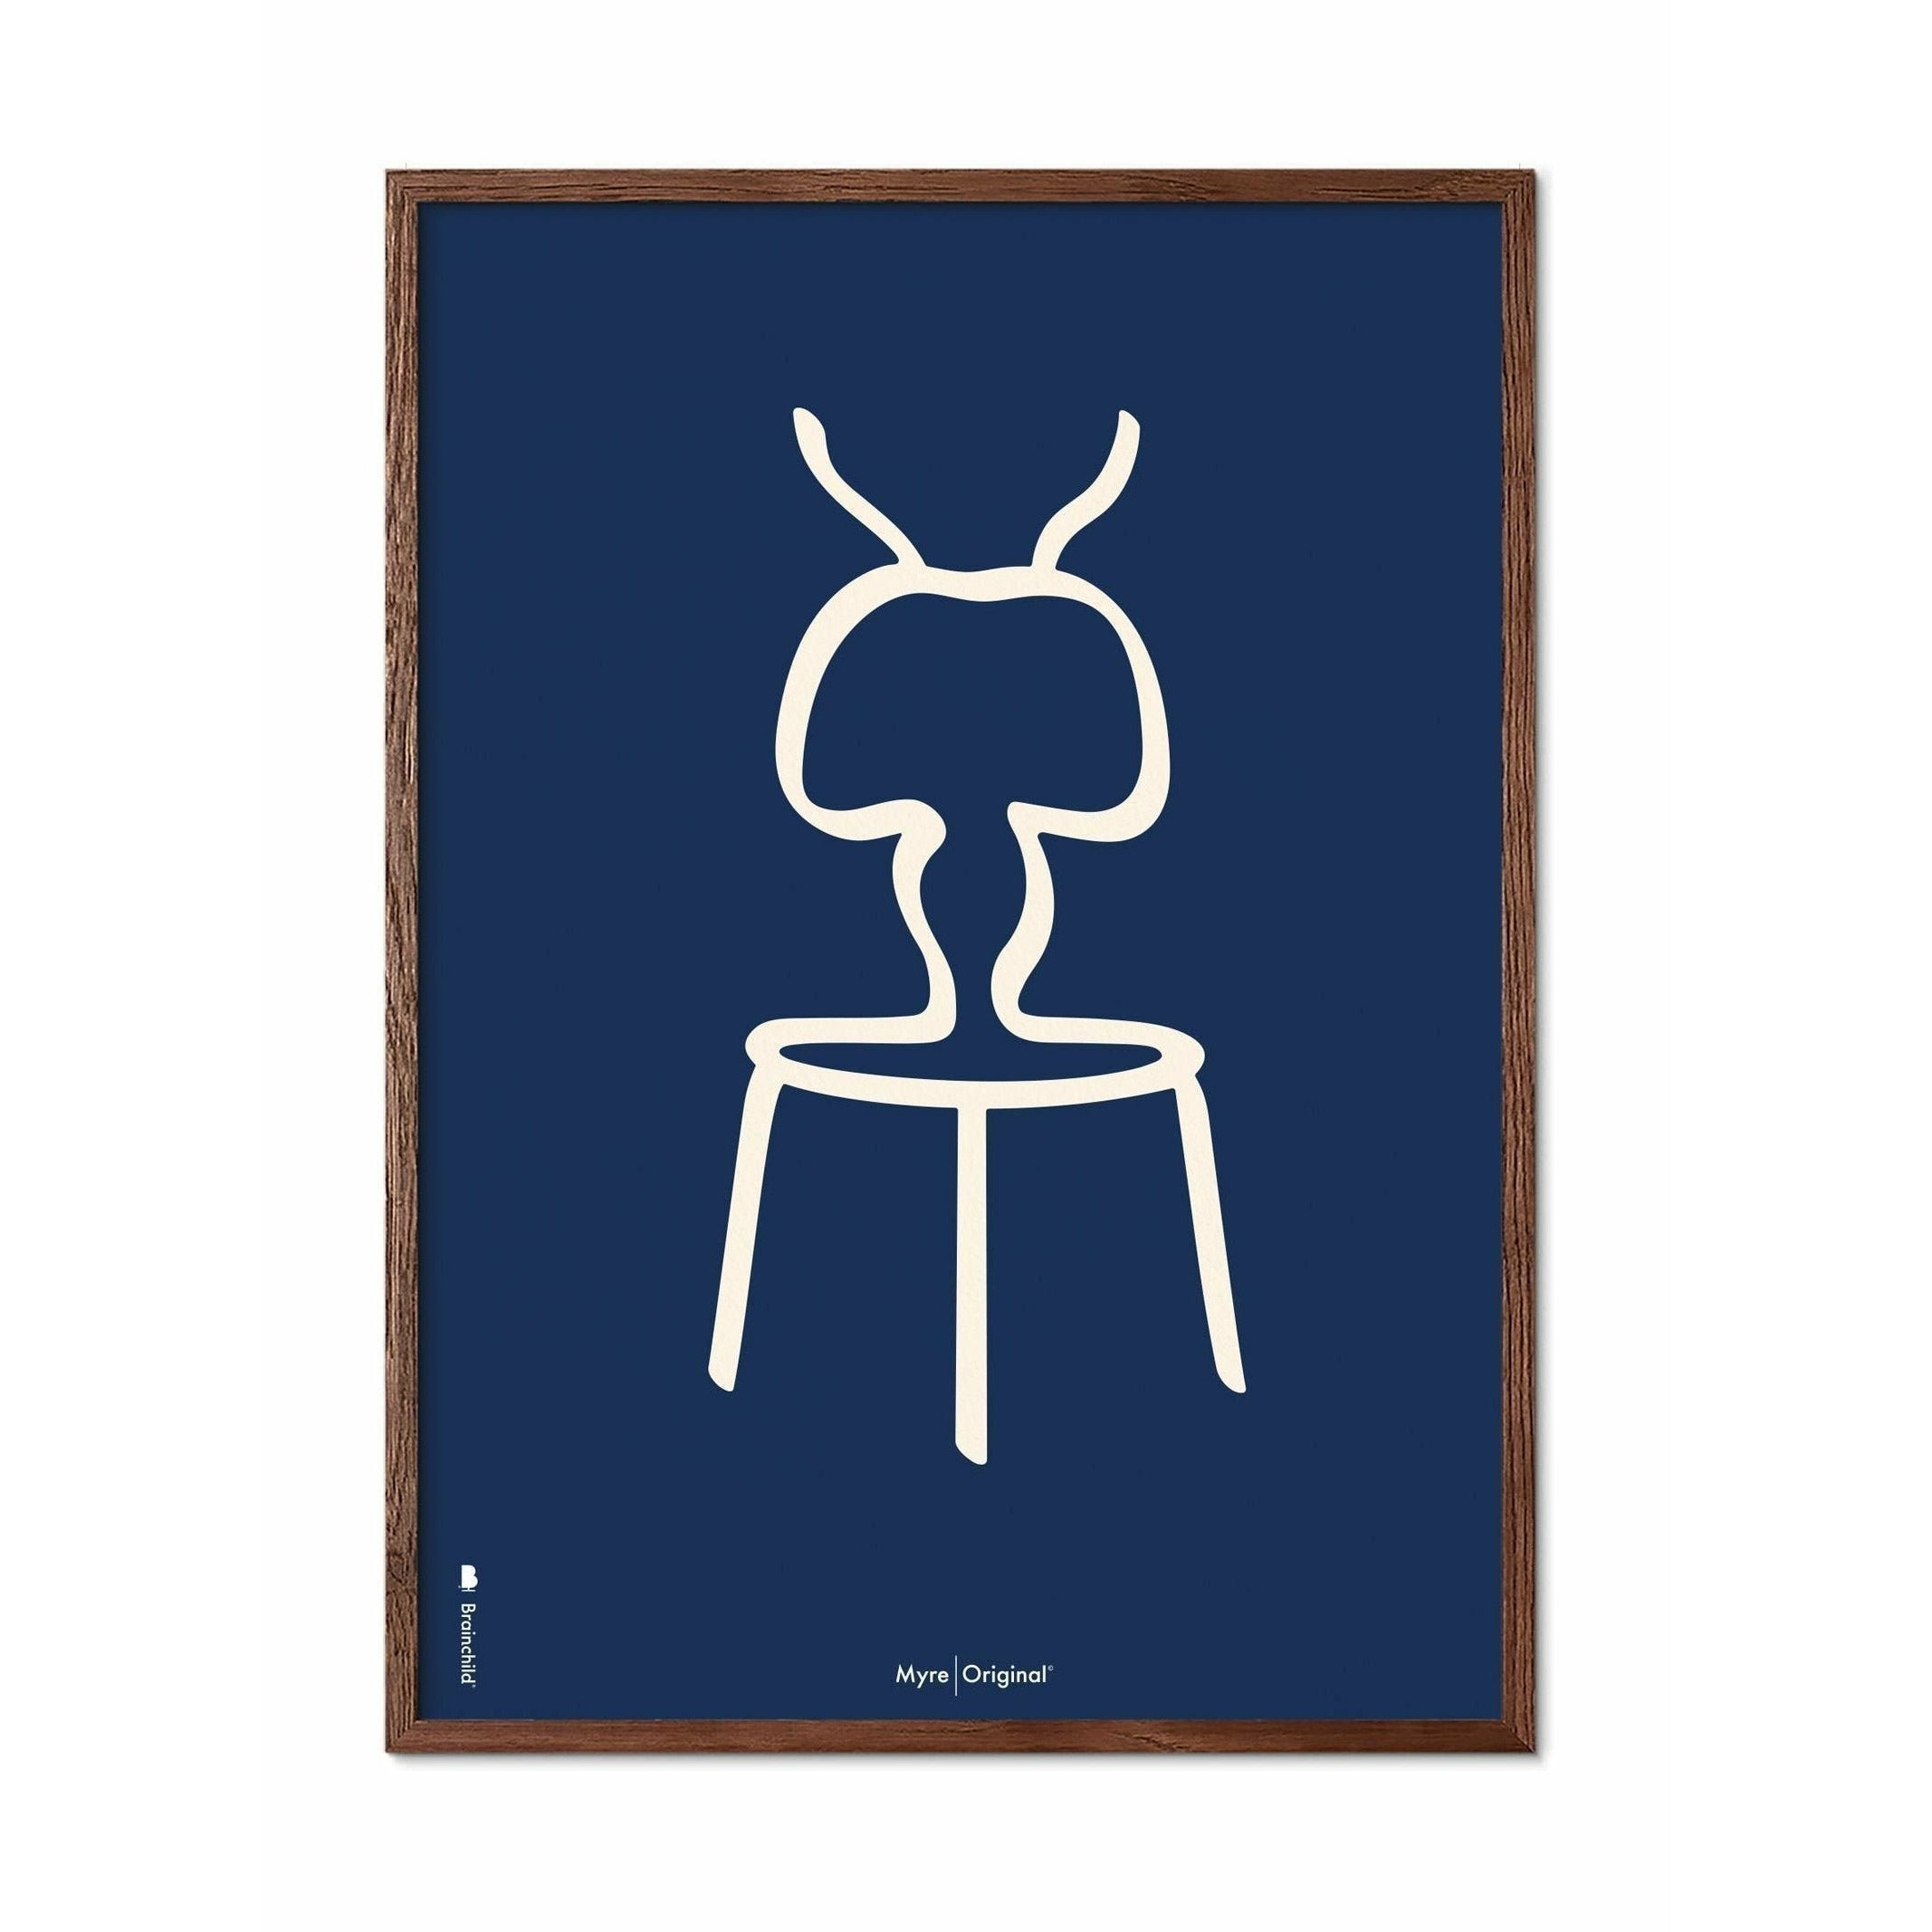 Pomysły plakat linii mrówek, rama wykonana z ciemnego drewna 70x100 cm, niebieskie tło